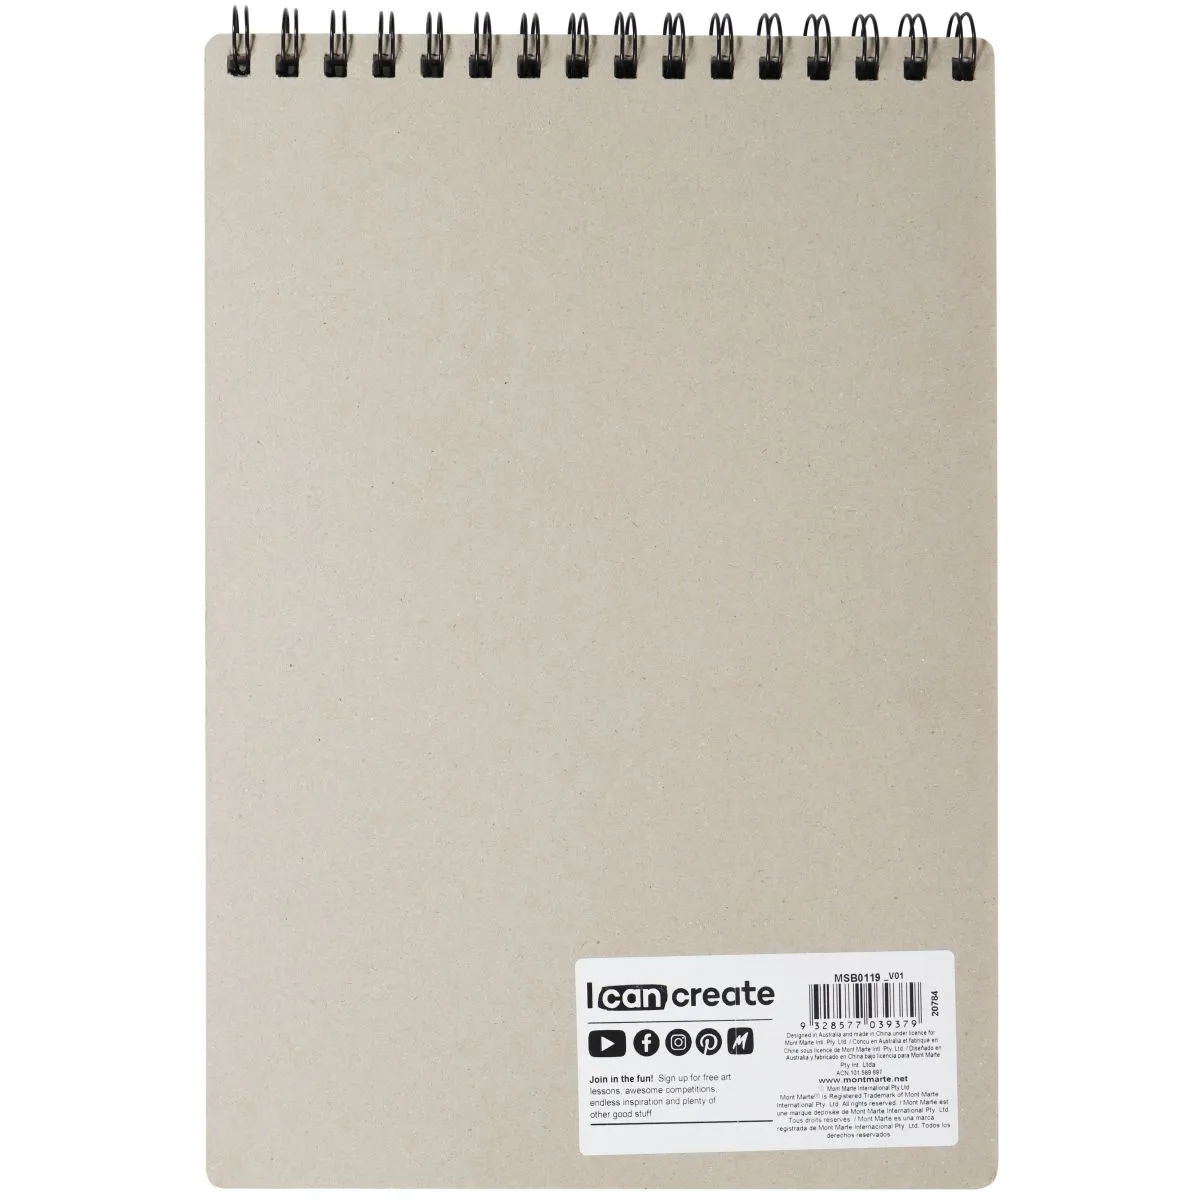 Cuaderno de Dibujo, Sketchbook, Tamaño 19 x 24 cm, Empastado, Tapa